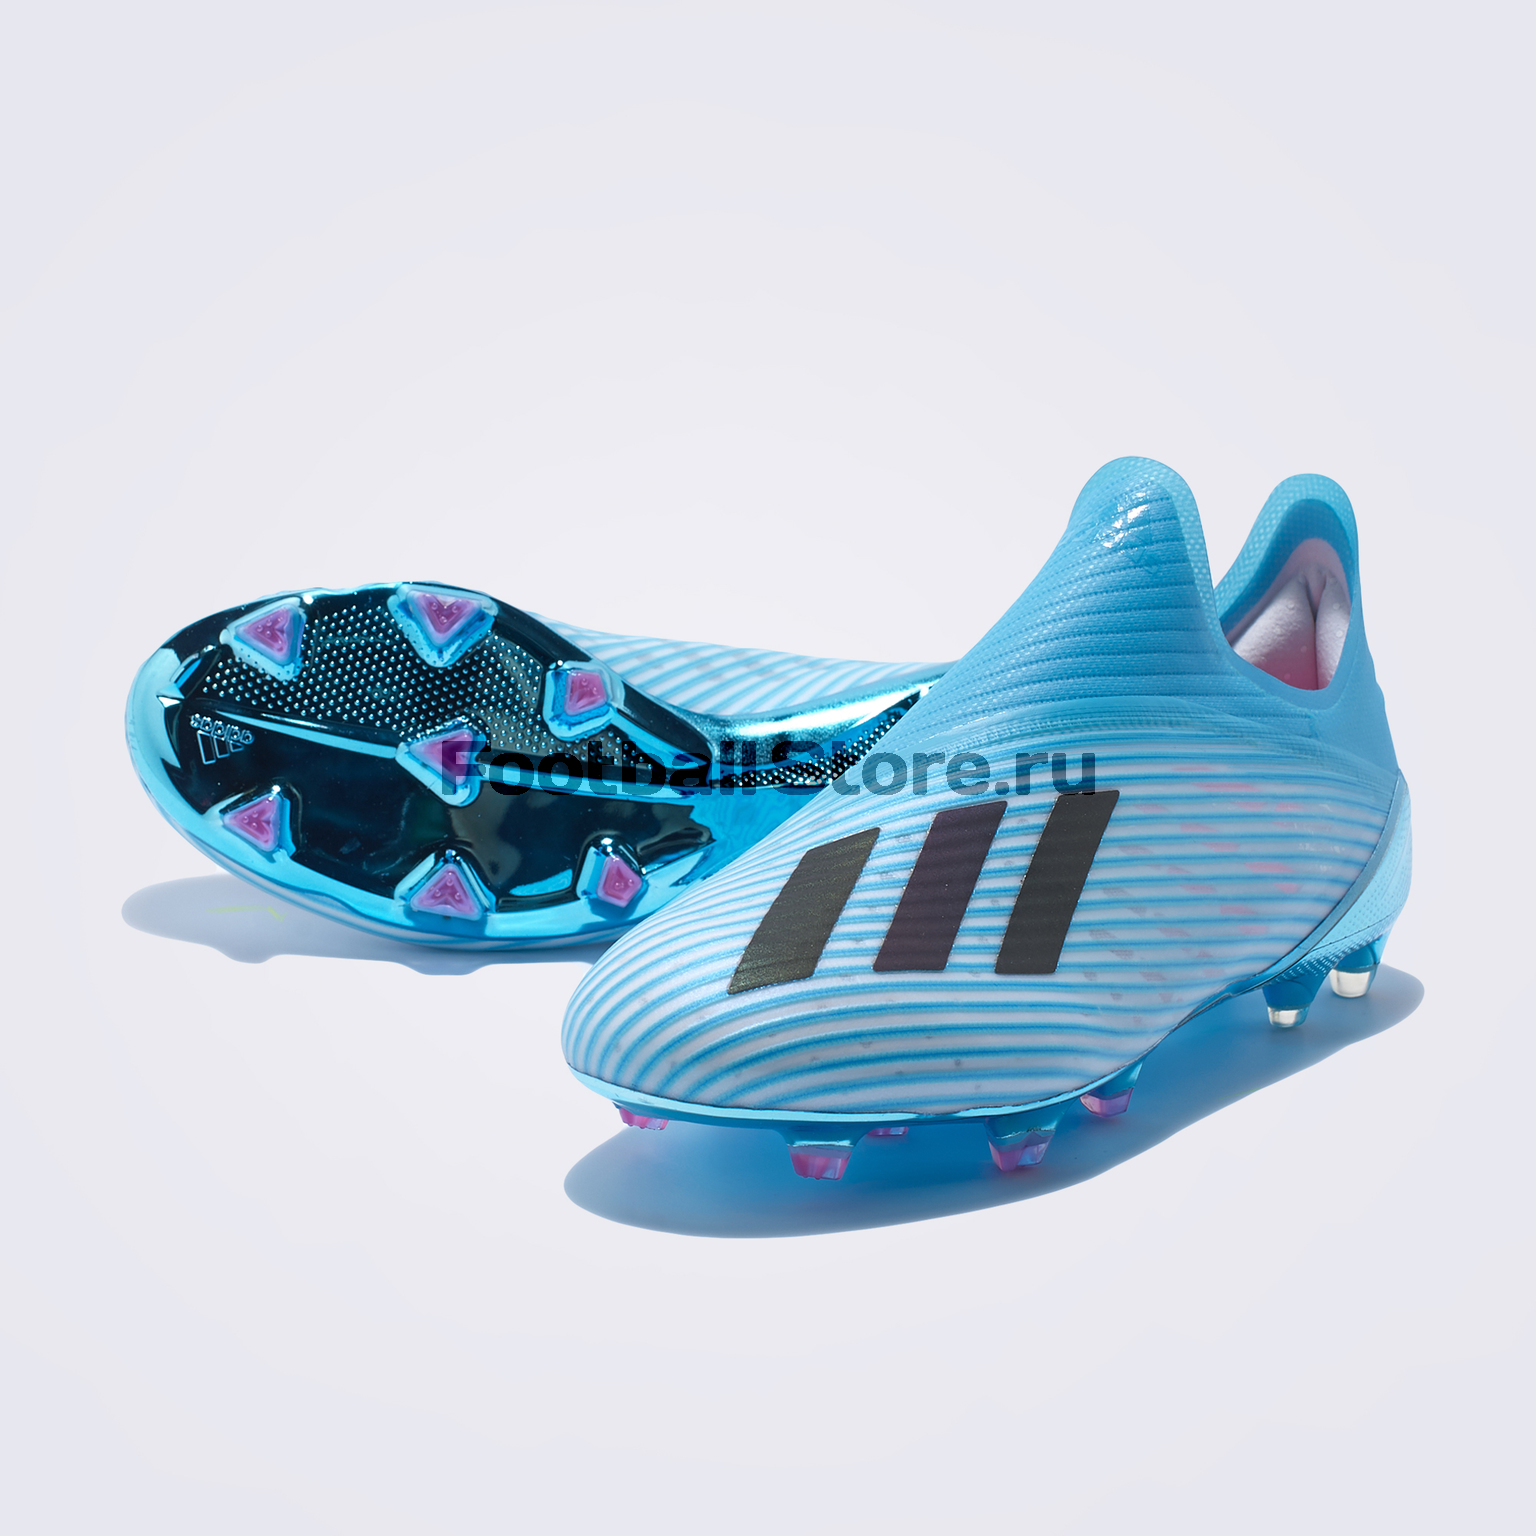 Бутсы Adidas X FG – купить бутсы в интернет магазине Footballstore, цена, фото, отзывы